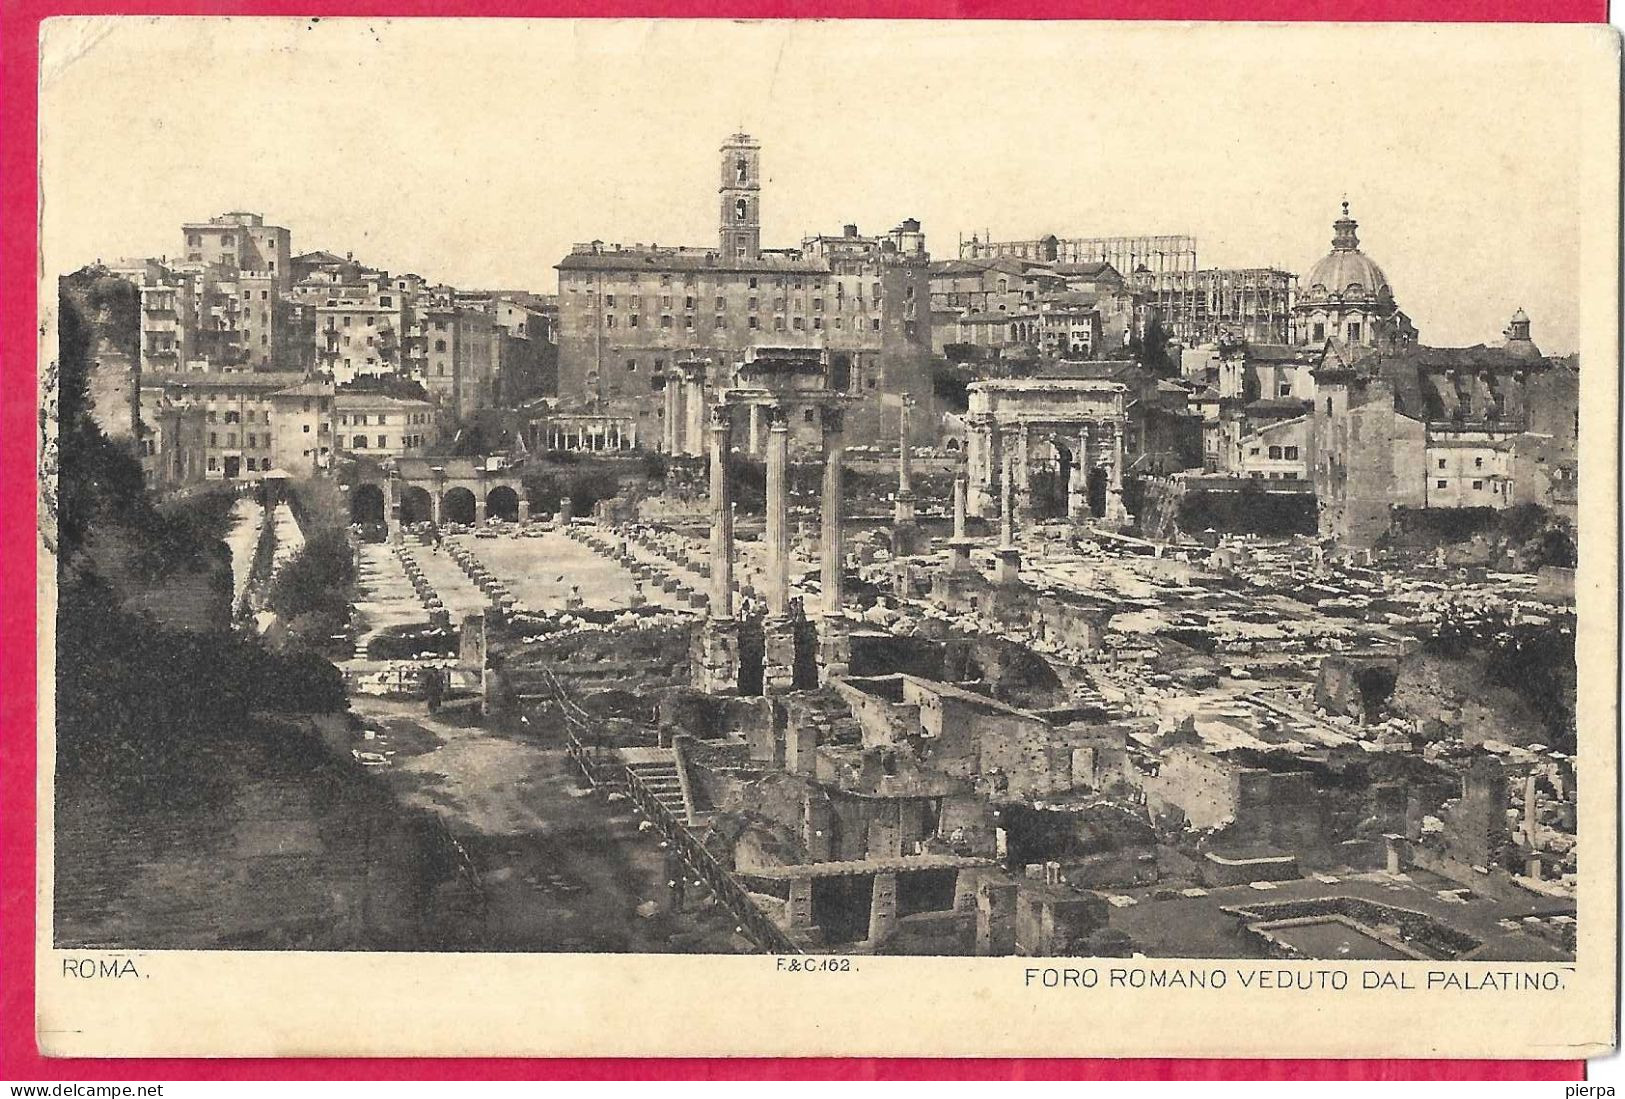 ROMA - FORO ROMANO - FORMATO PICCOLO - VIAGGIATA 1895 PER LA FRANCIA - Altri Monumenti, Edifici